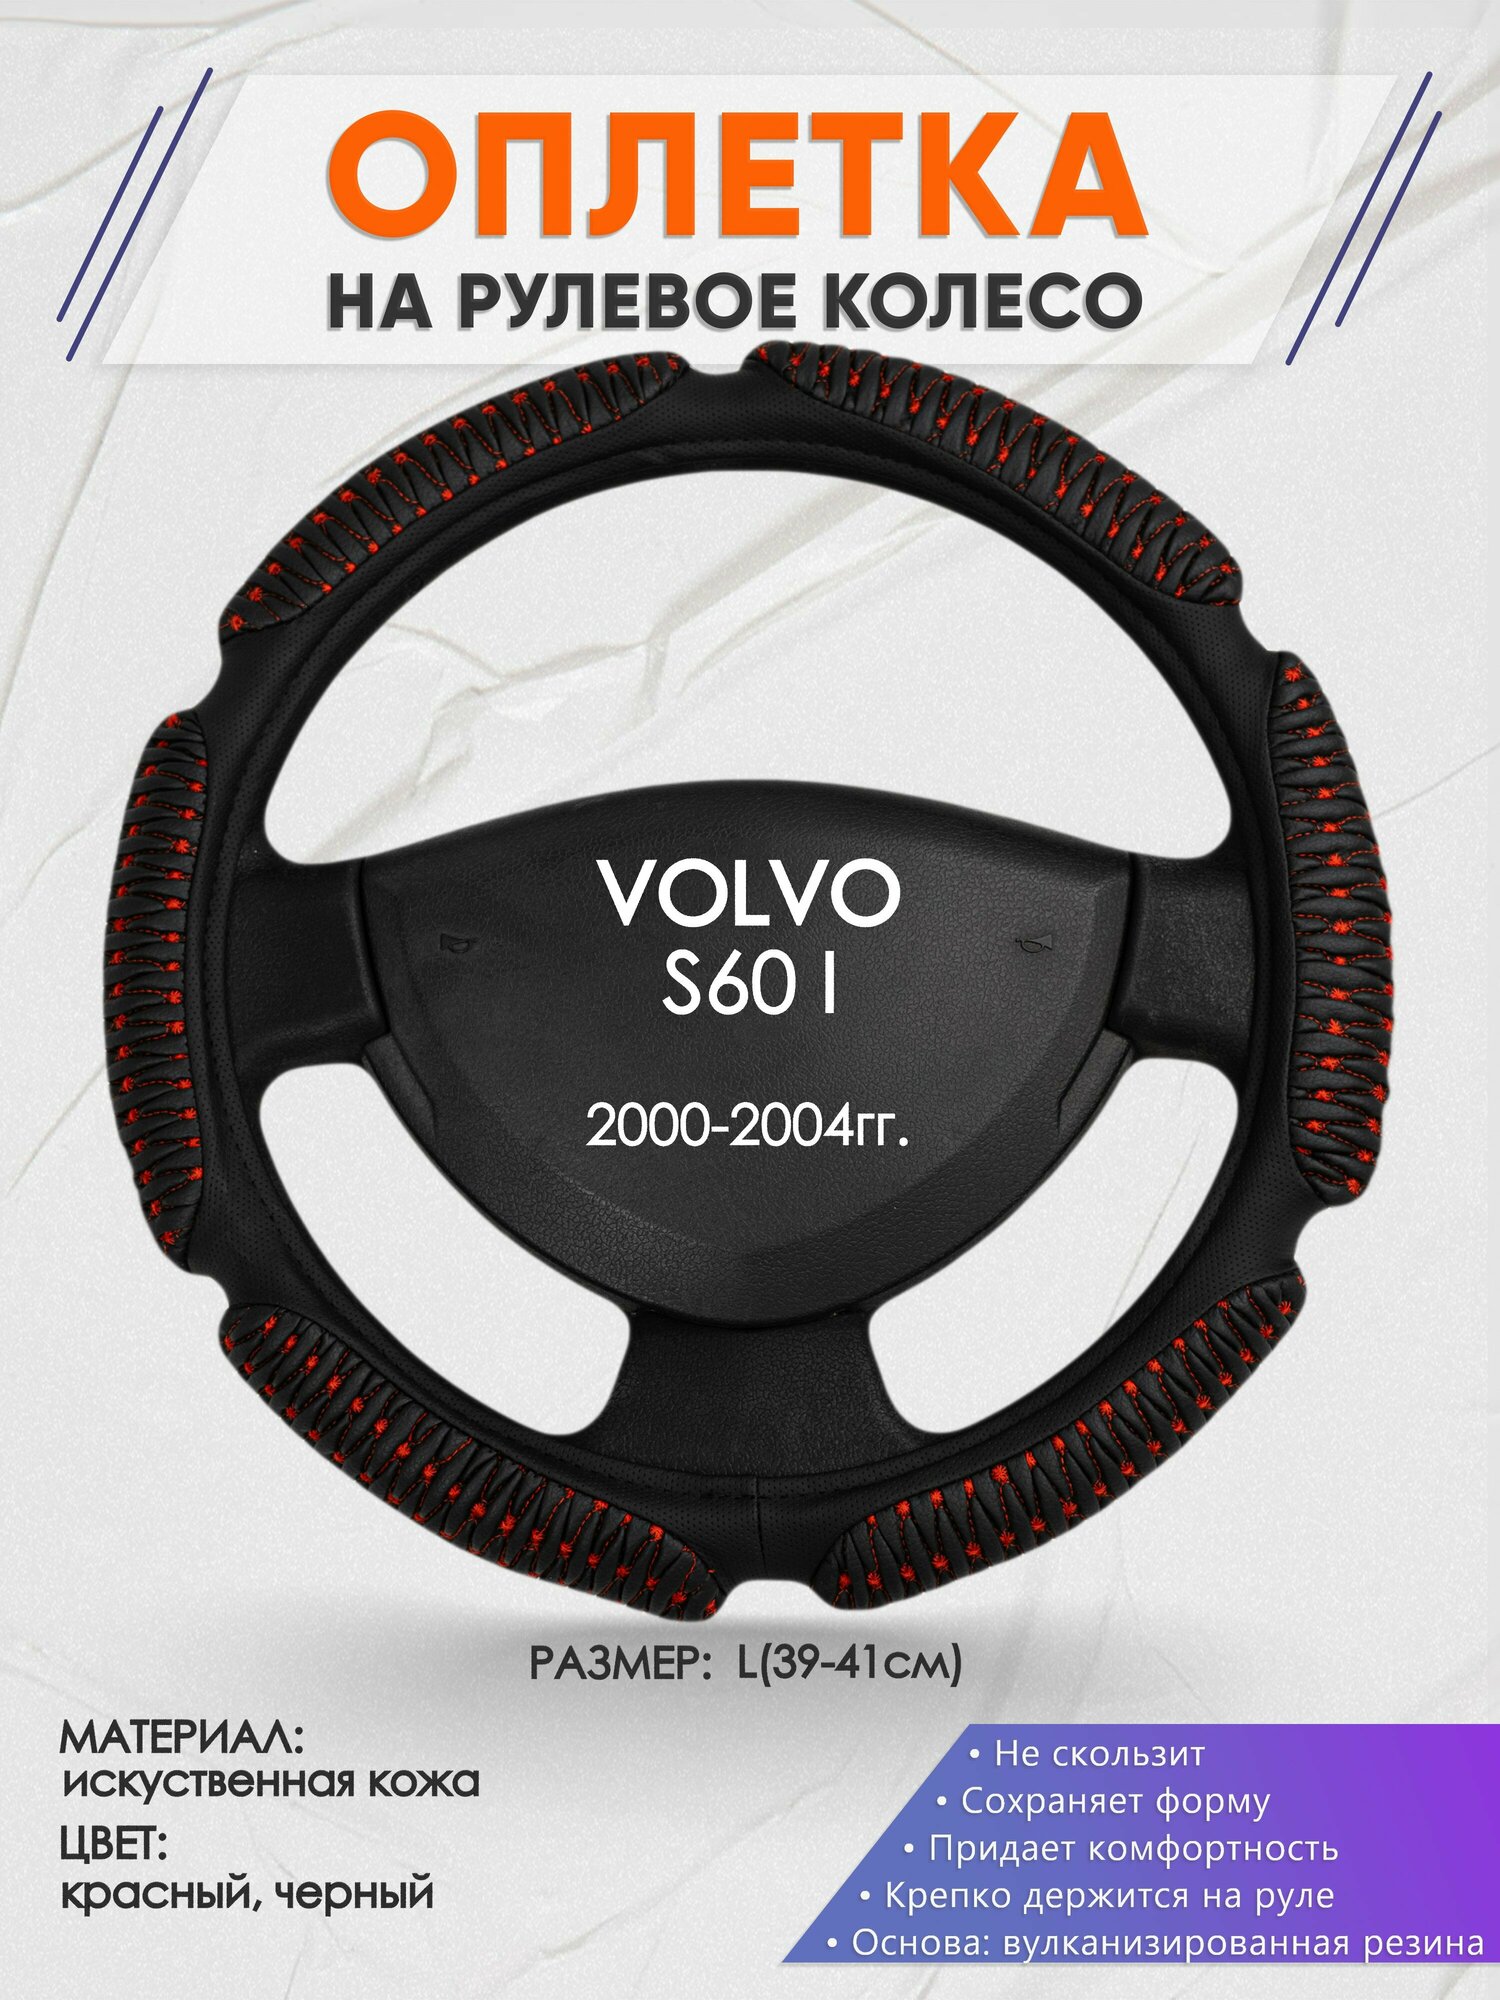 Оплетка на руль для VOLVO S60 I(Вольво с60) 2000-2004, L(39-41см), Искусственная кожа 01